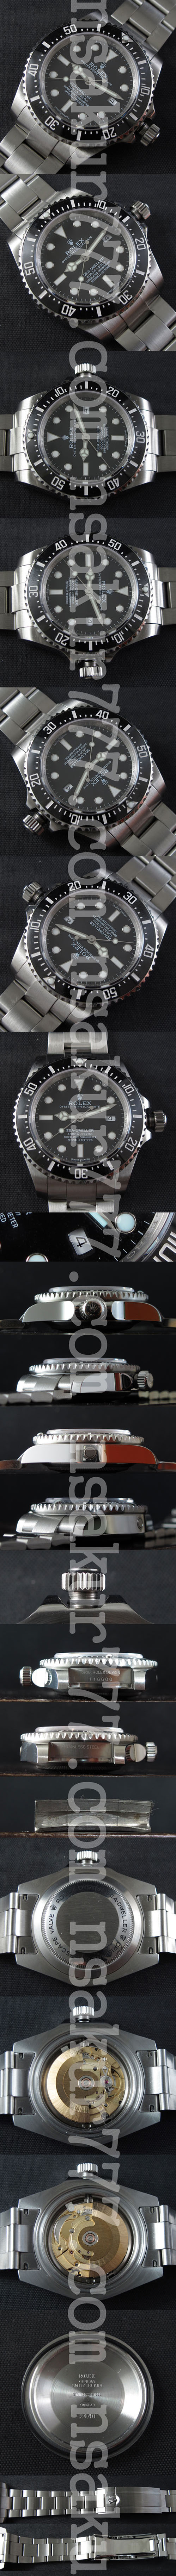 【ブラック文字盤】ロレックス シードゥエラーコピー時計、見極めが難しいスーパーコピー